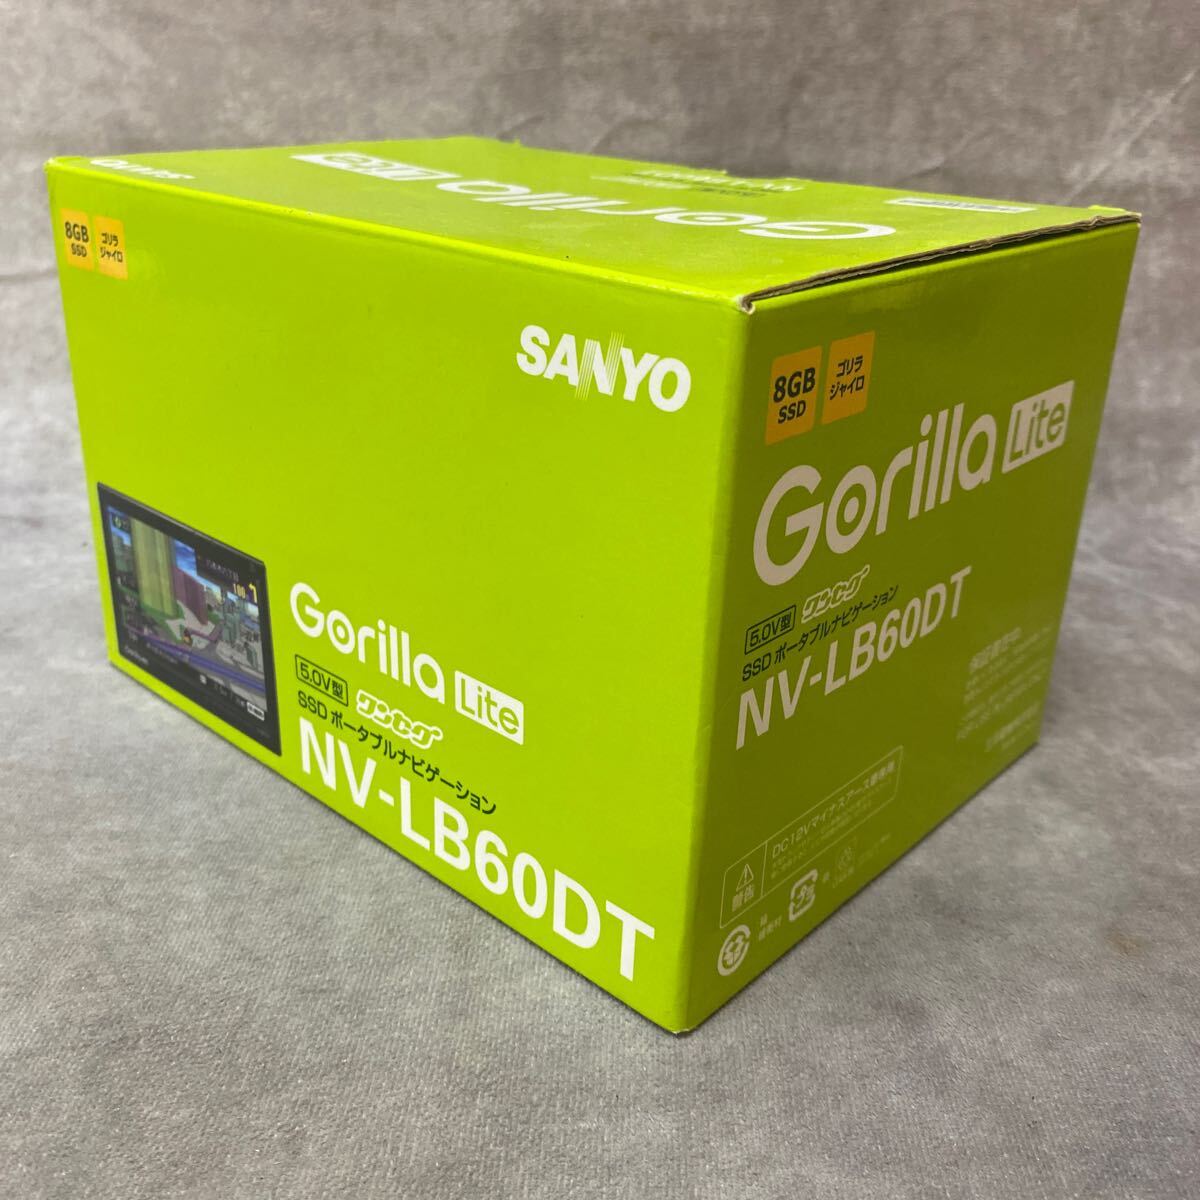 中古 SANYO NV-LB60DT/Gorilla Lite 5.0V型 ワンセグ SSDポータブルナビゲーション 8GB SSD ゴリラジャイロ　カーナビ_画像9